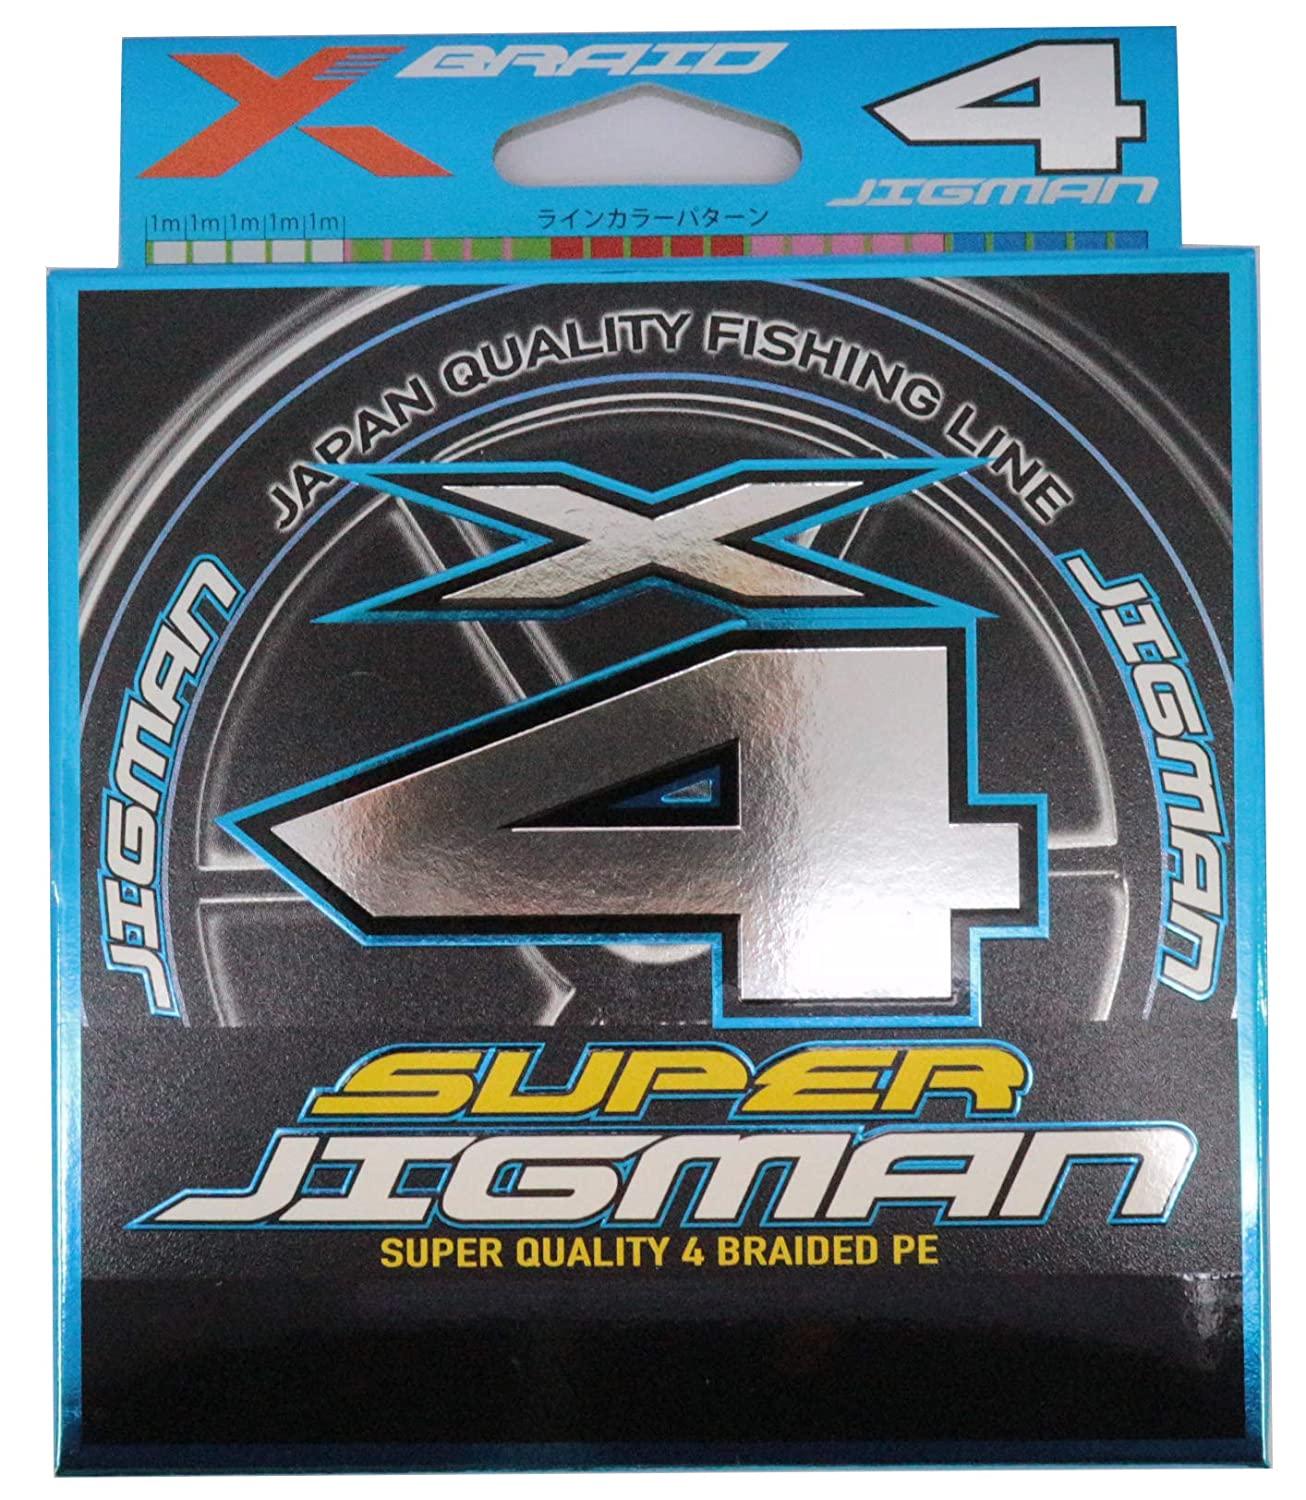  X-BRAID SUPER JIGMAN X4 200m 3 40lb